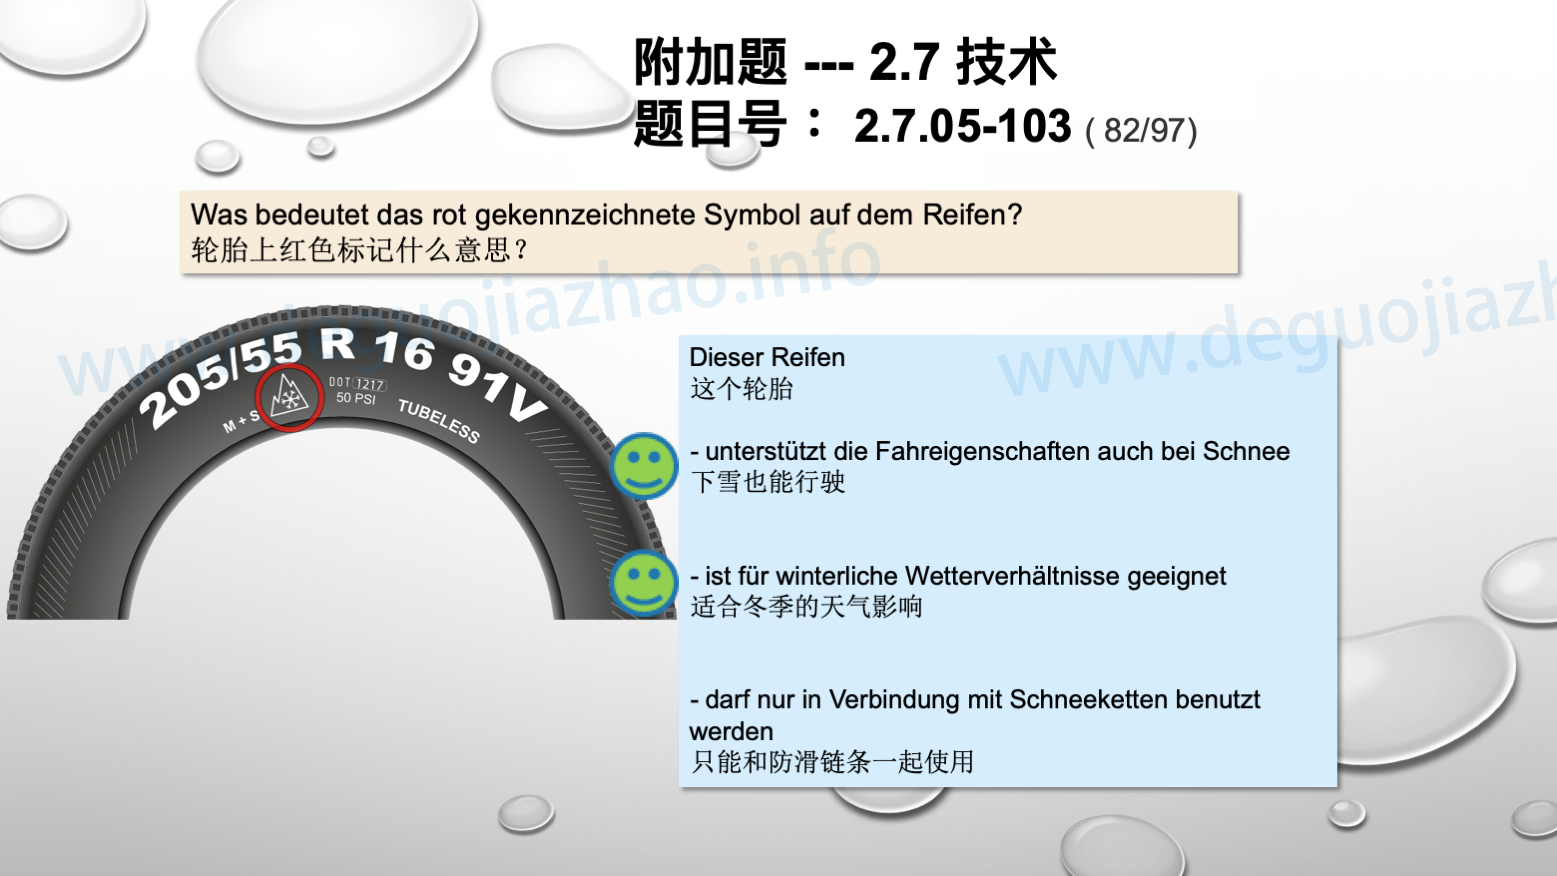 德国驾照官方理论题 章节 2.7.05 使用和保养轮胎